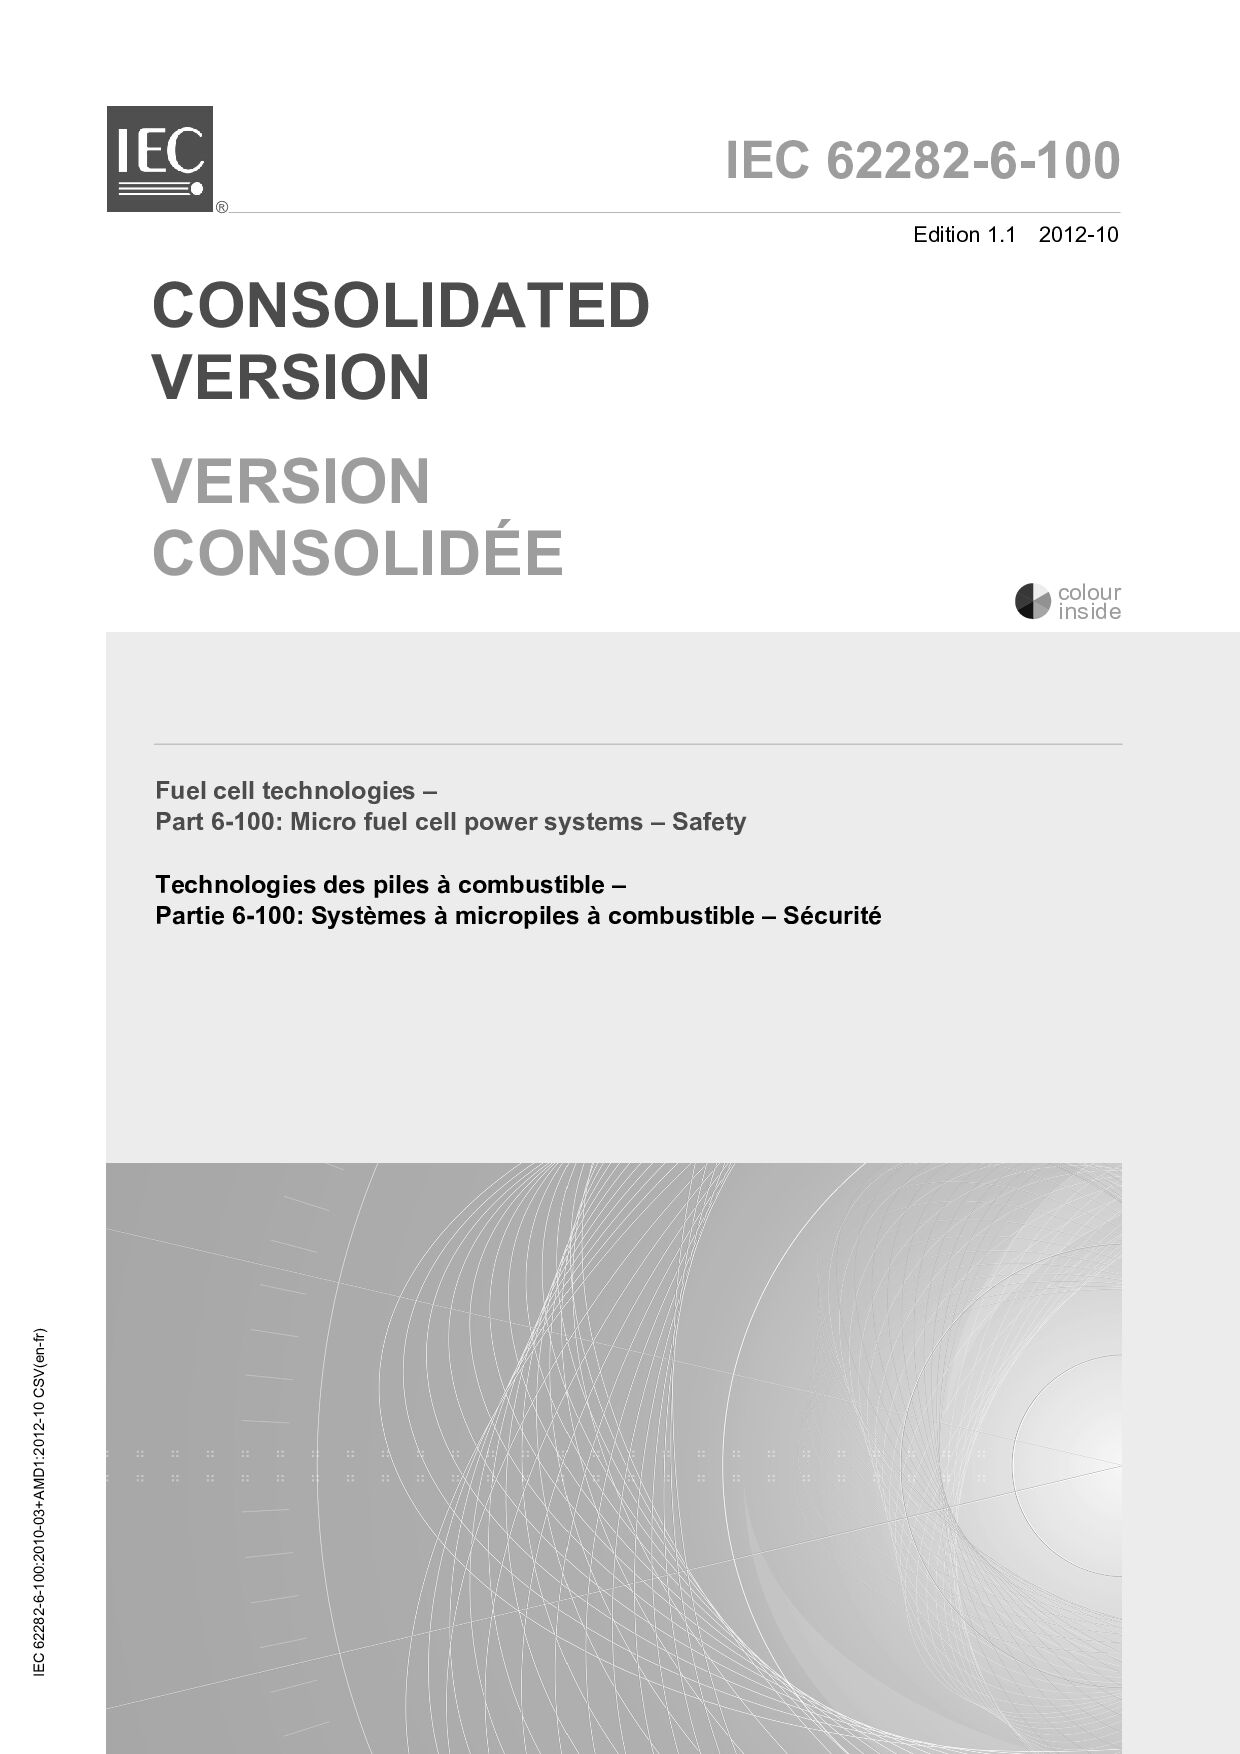 IEC 62282-6-100:2012